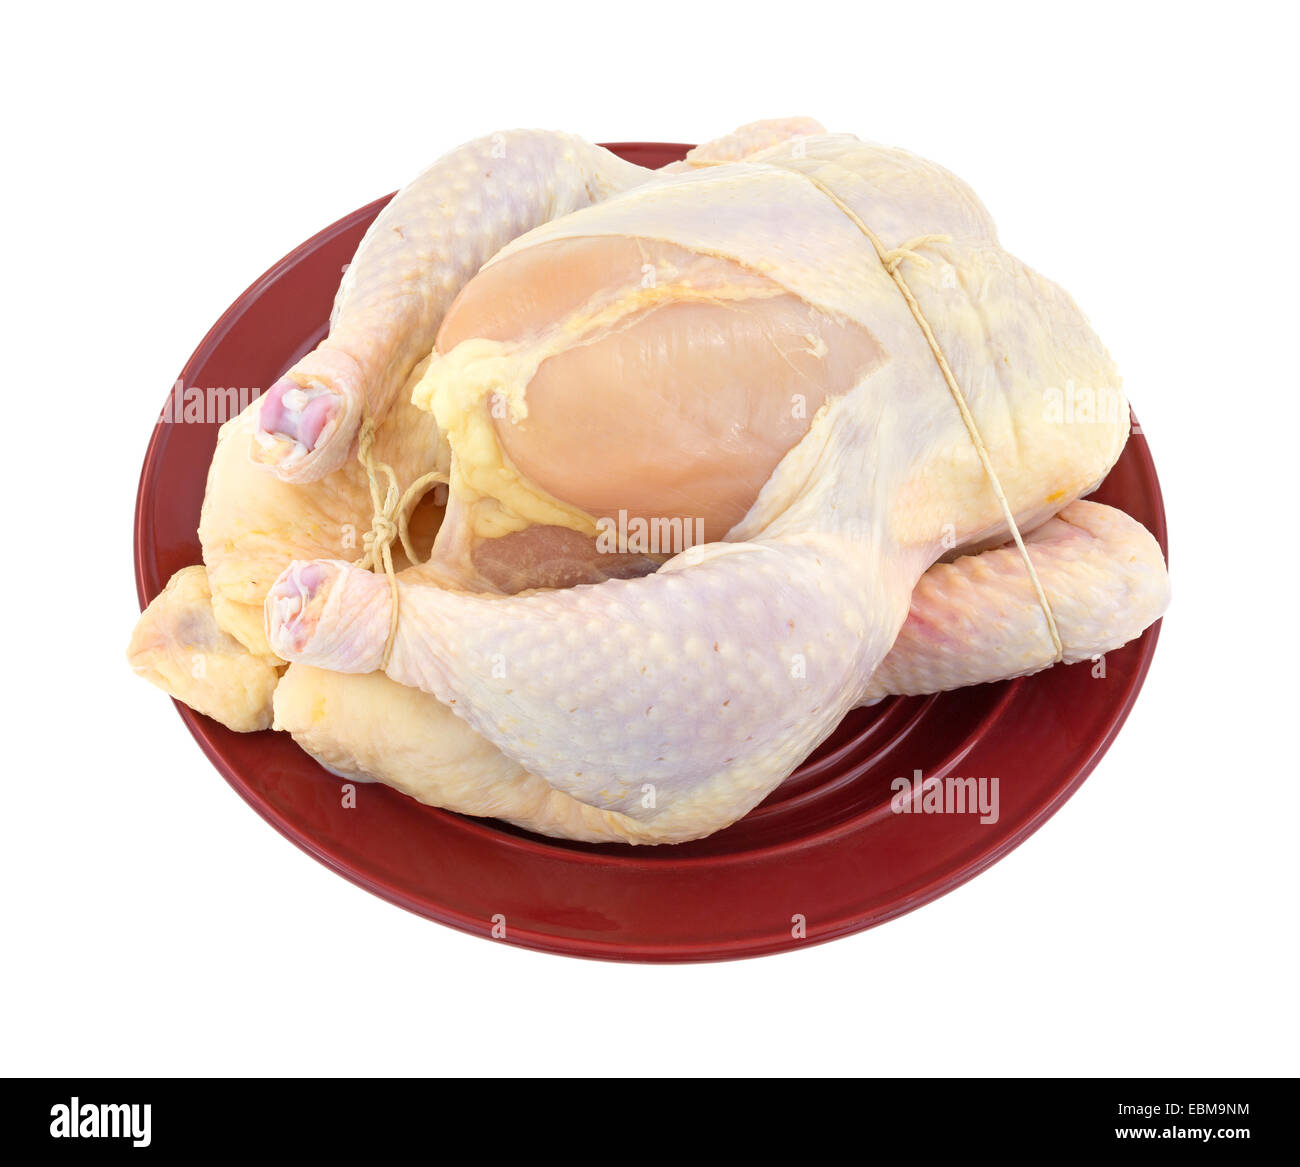 Pollo trussato immagini e fotografie stock ad alta risoluzione - Alamy